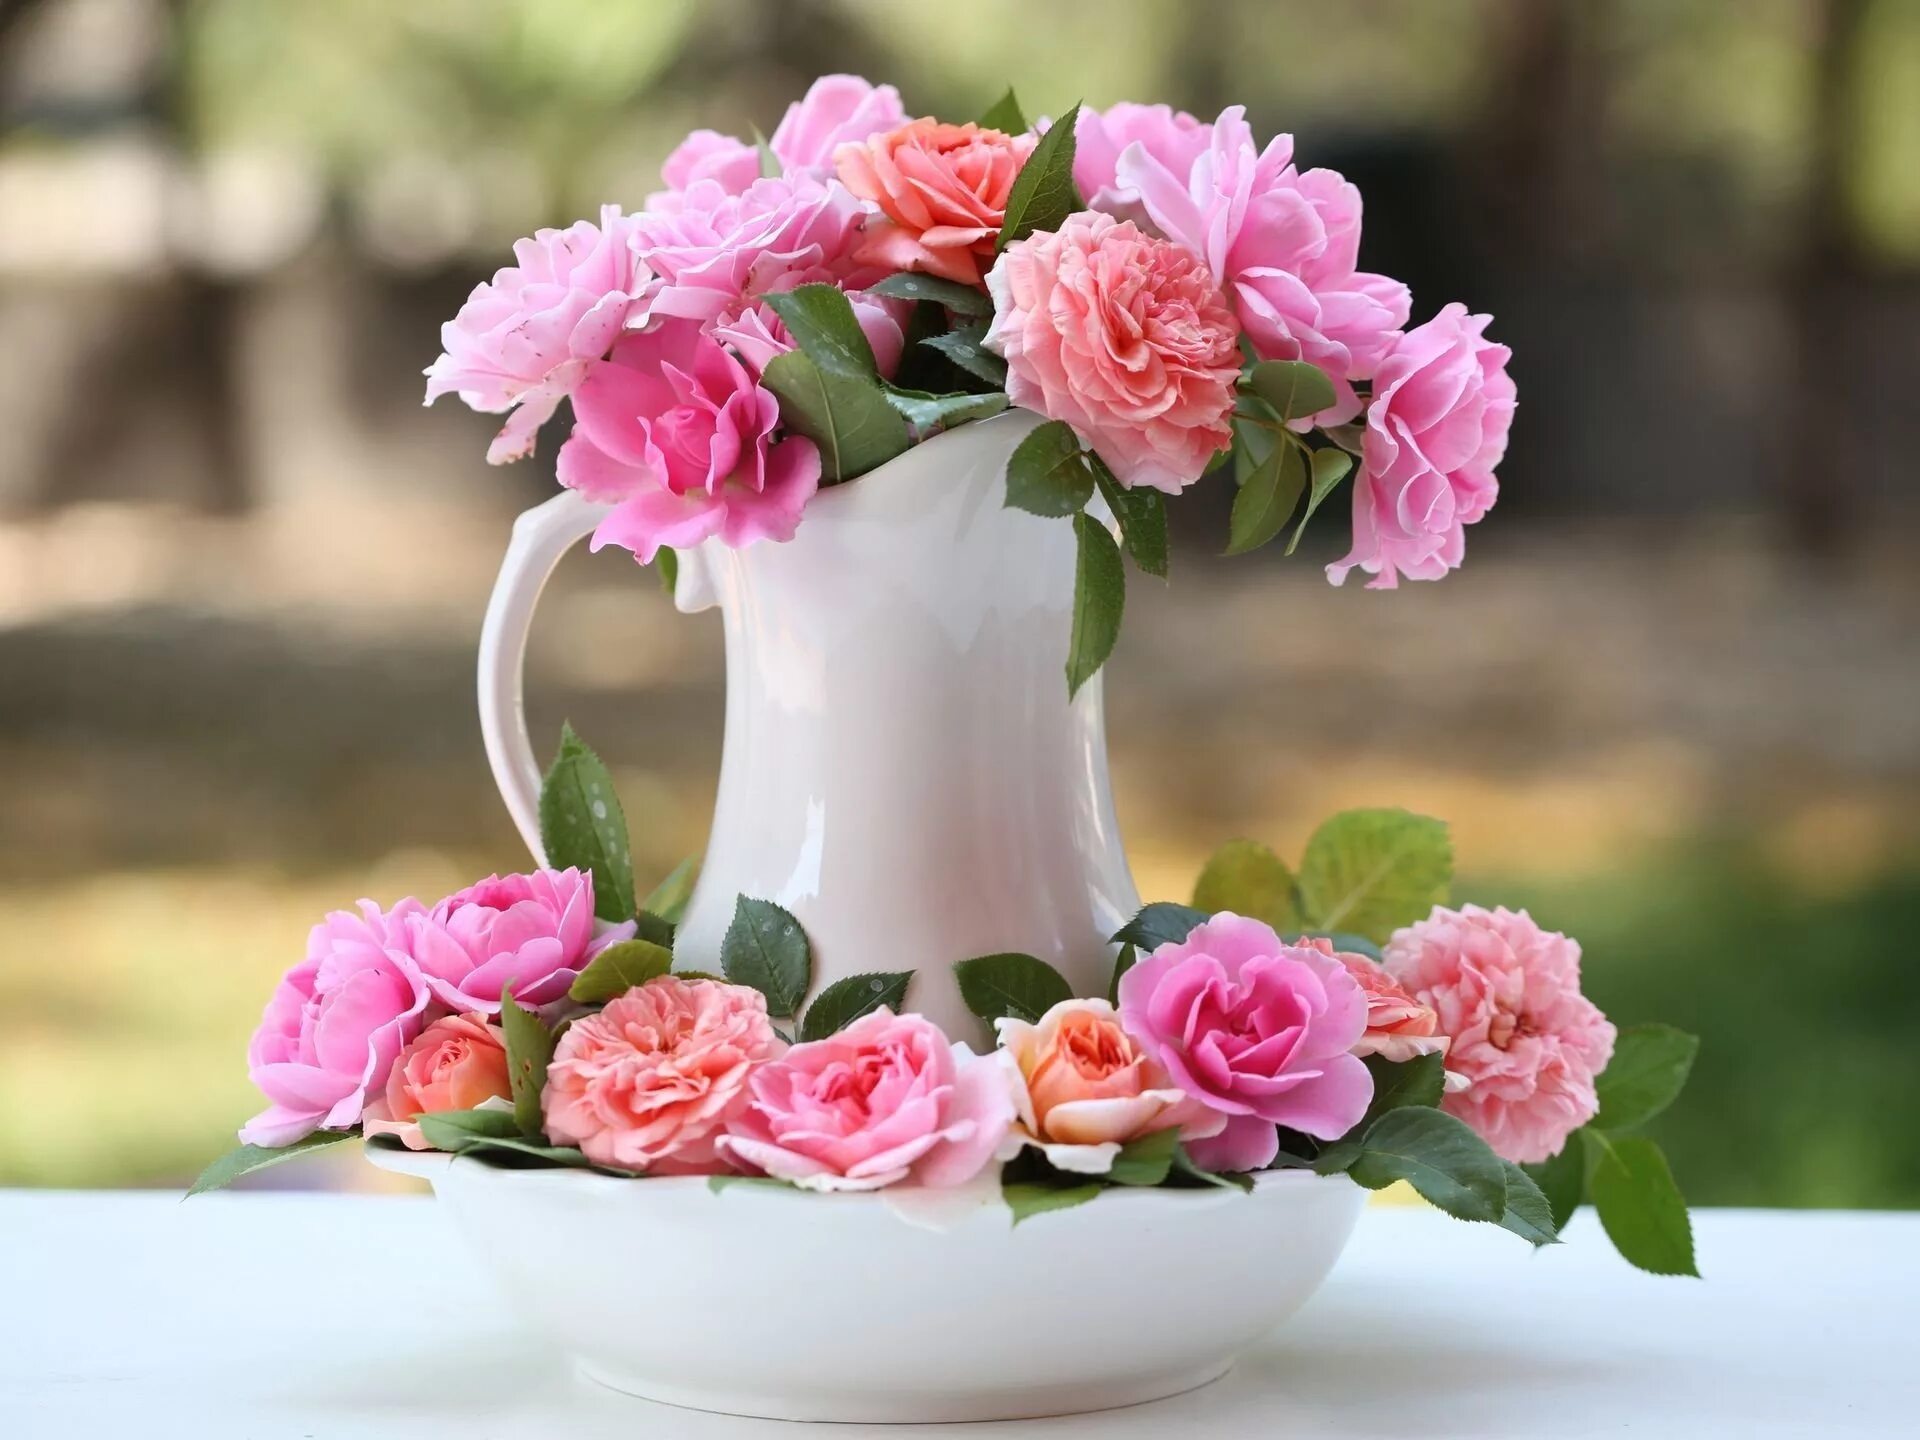 Прекрасного утра с цветами. Шикарные цветы в вазе. Цветы в кувшине. Цветы в вазе на столе. Нежный цветок.